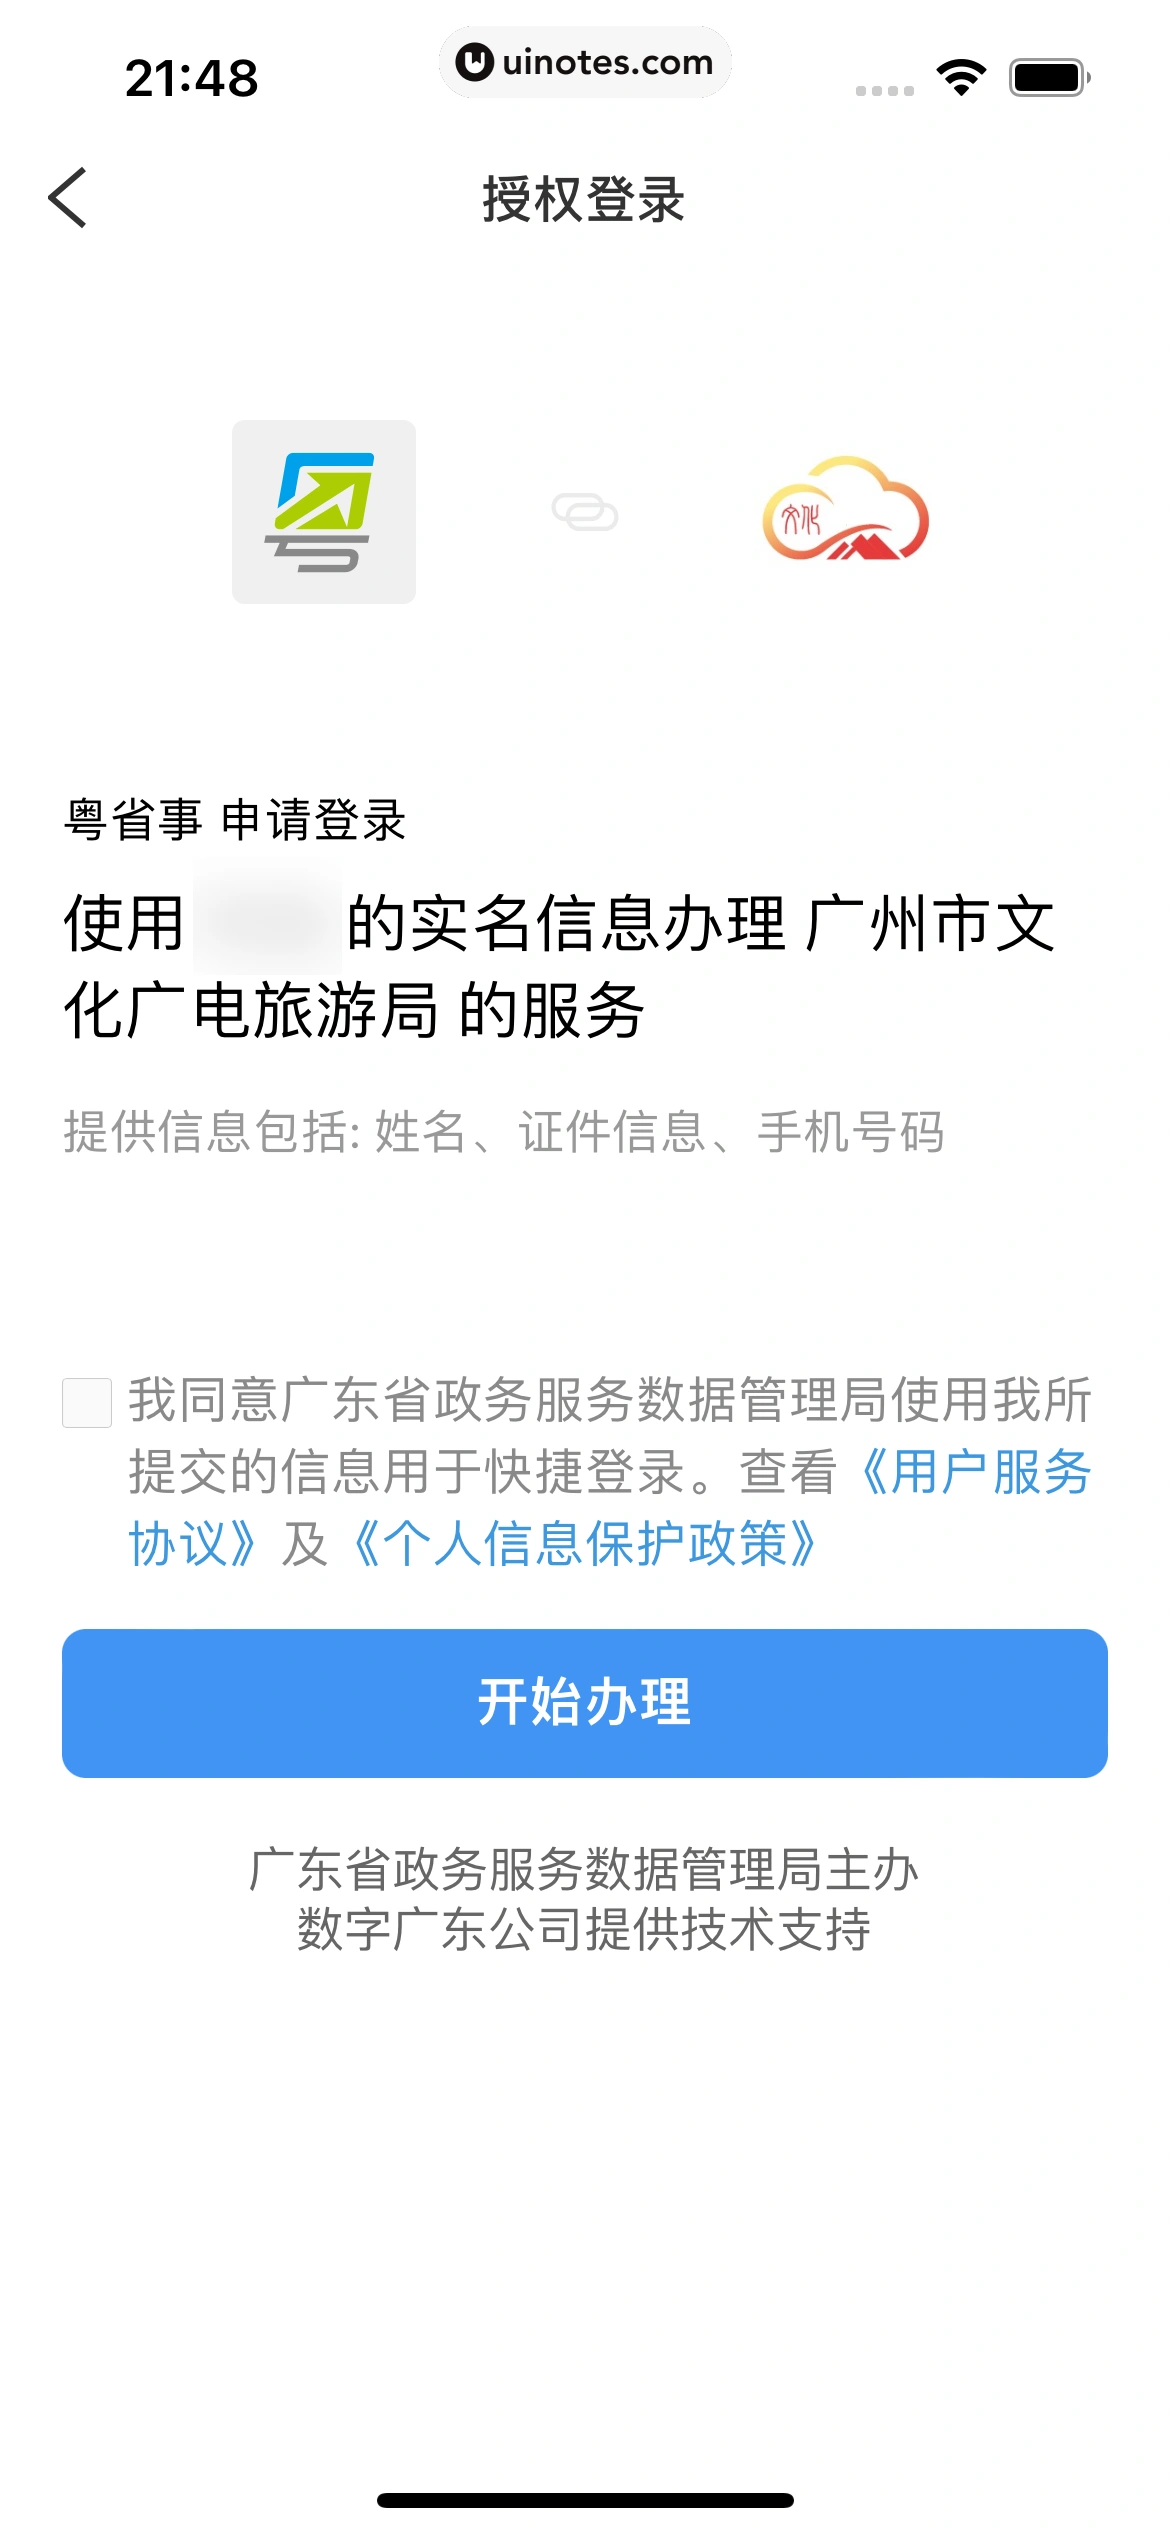 粤省事 App 截图 057 - UI Notes